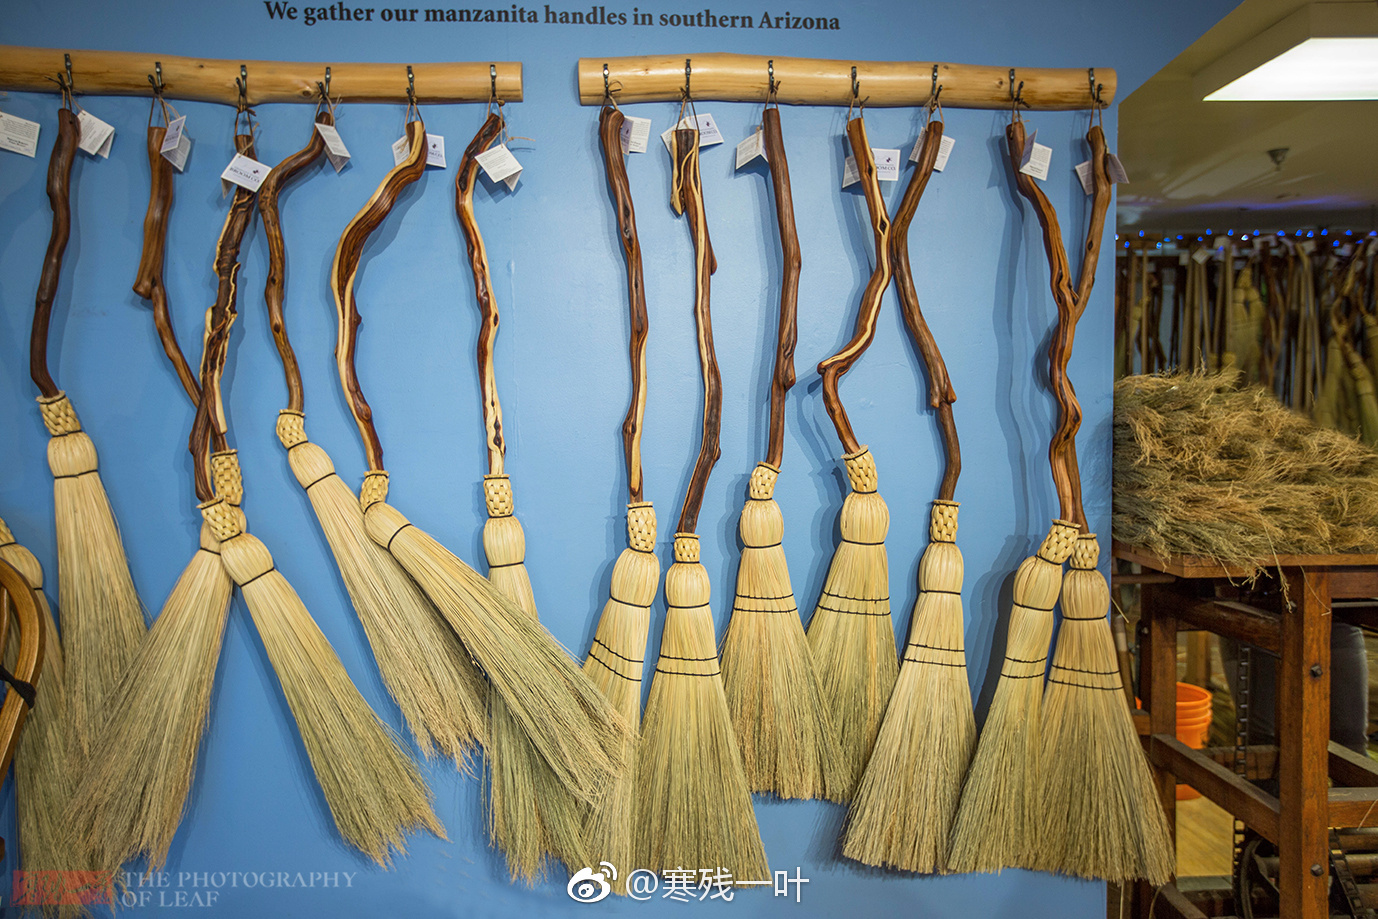 扫帚,扫地除尘的工具,在四千年前起源于中国。